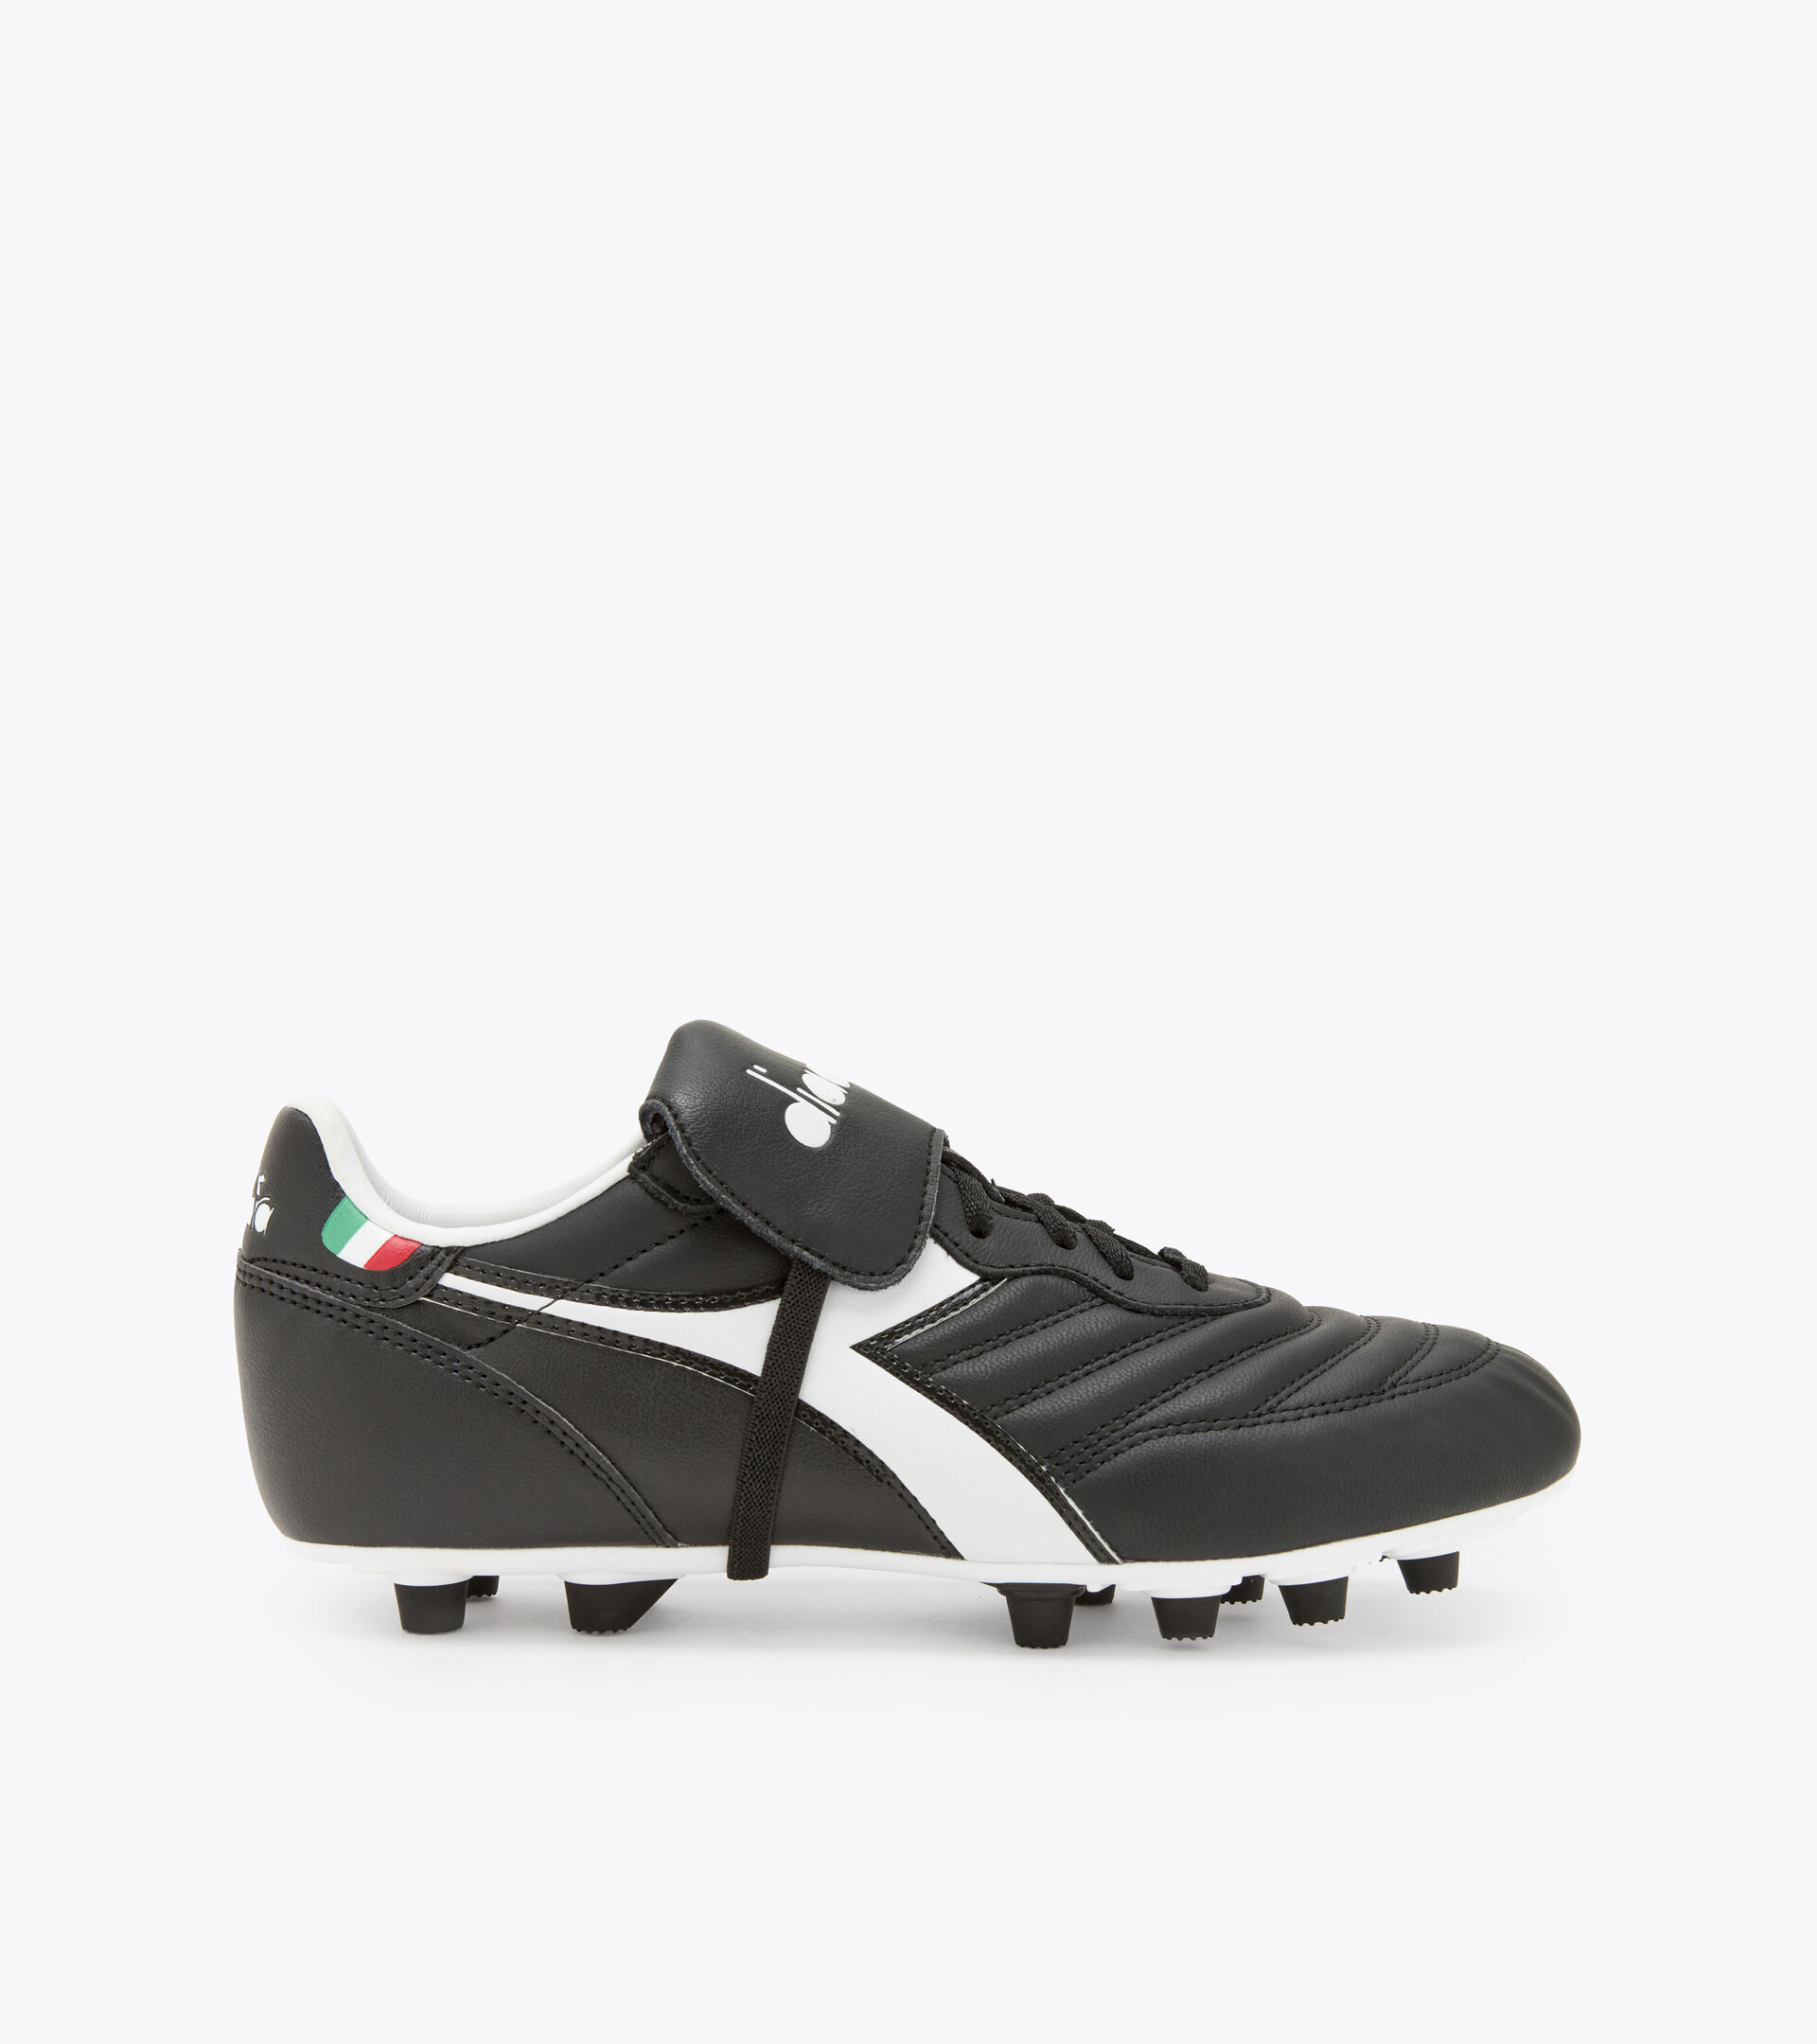 BRASIL LT T MDPU Football boots for firm grounds - Diadora Online Store US